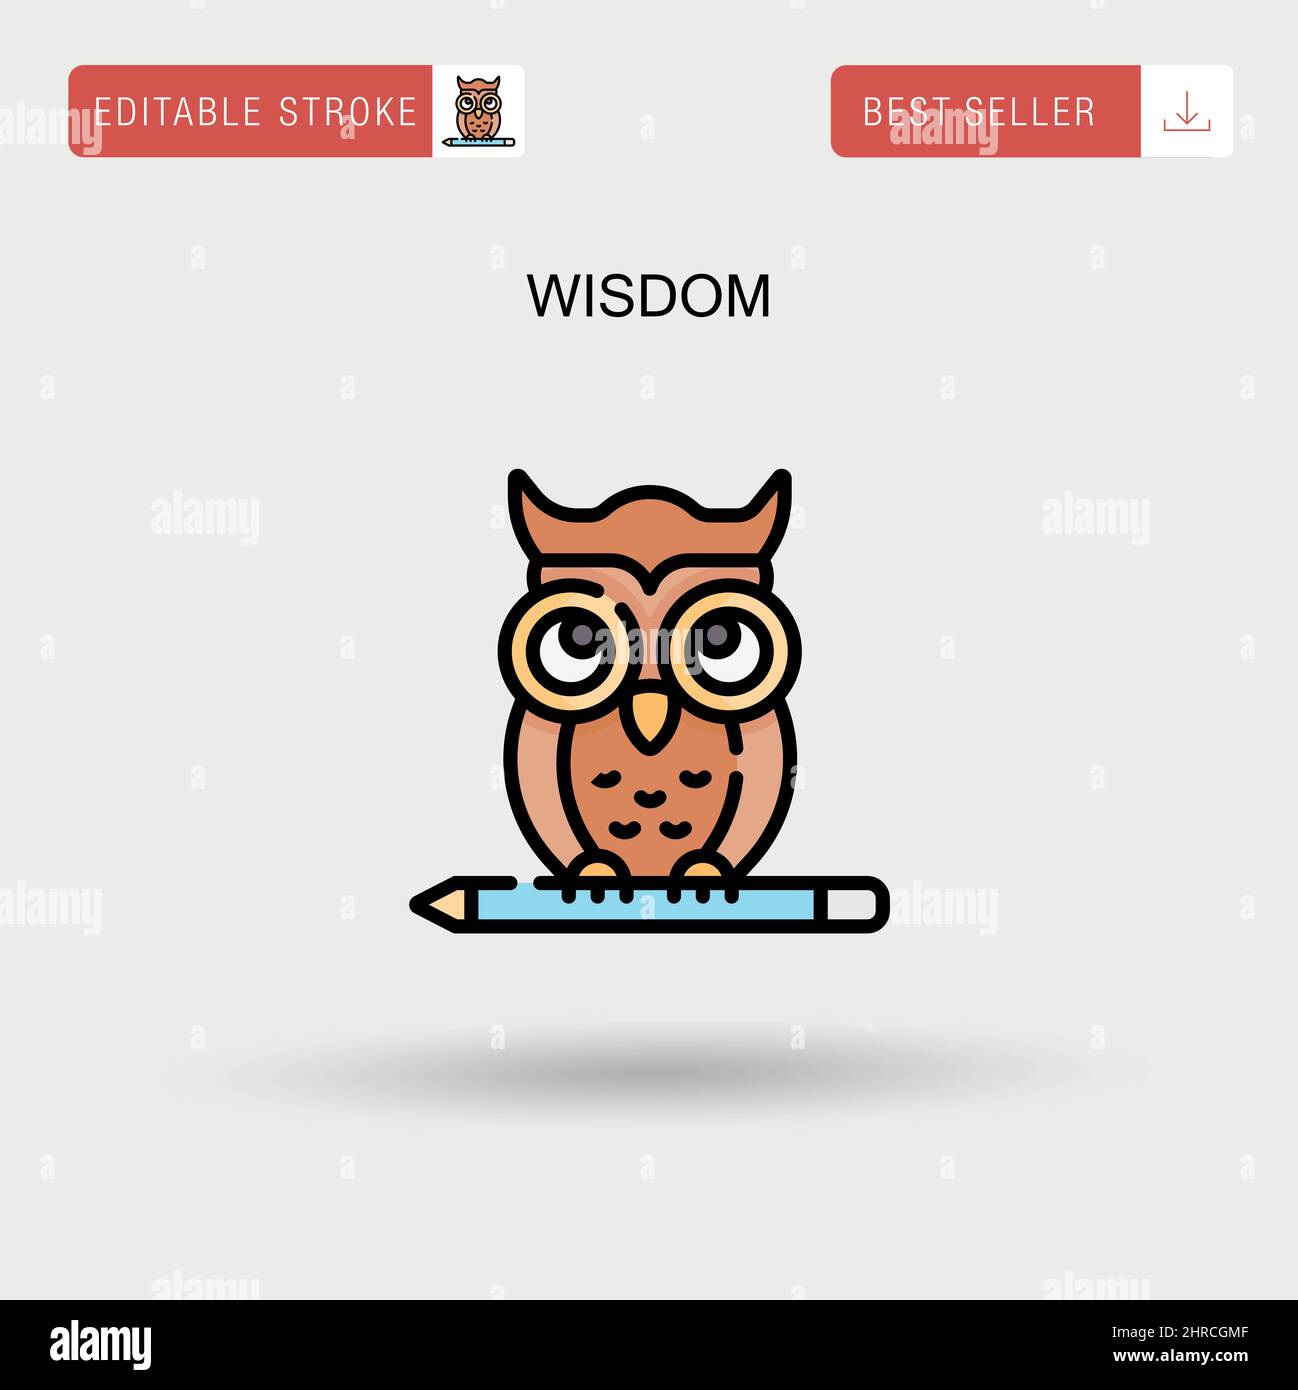 Wisdom Simple vector icon. Stock Vector